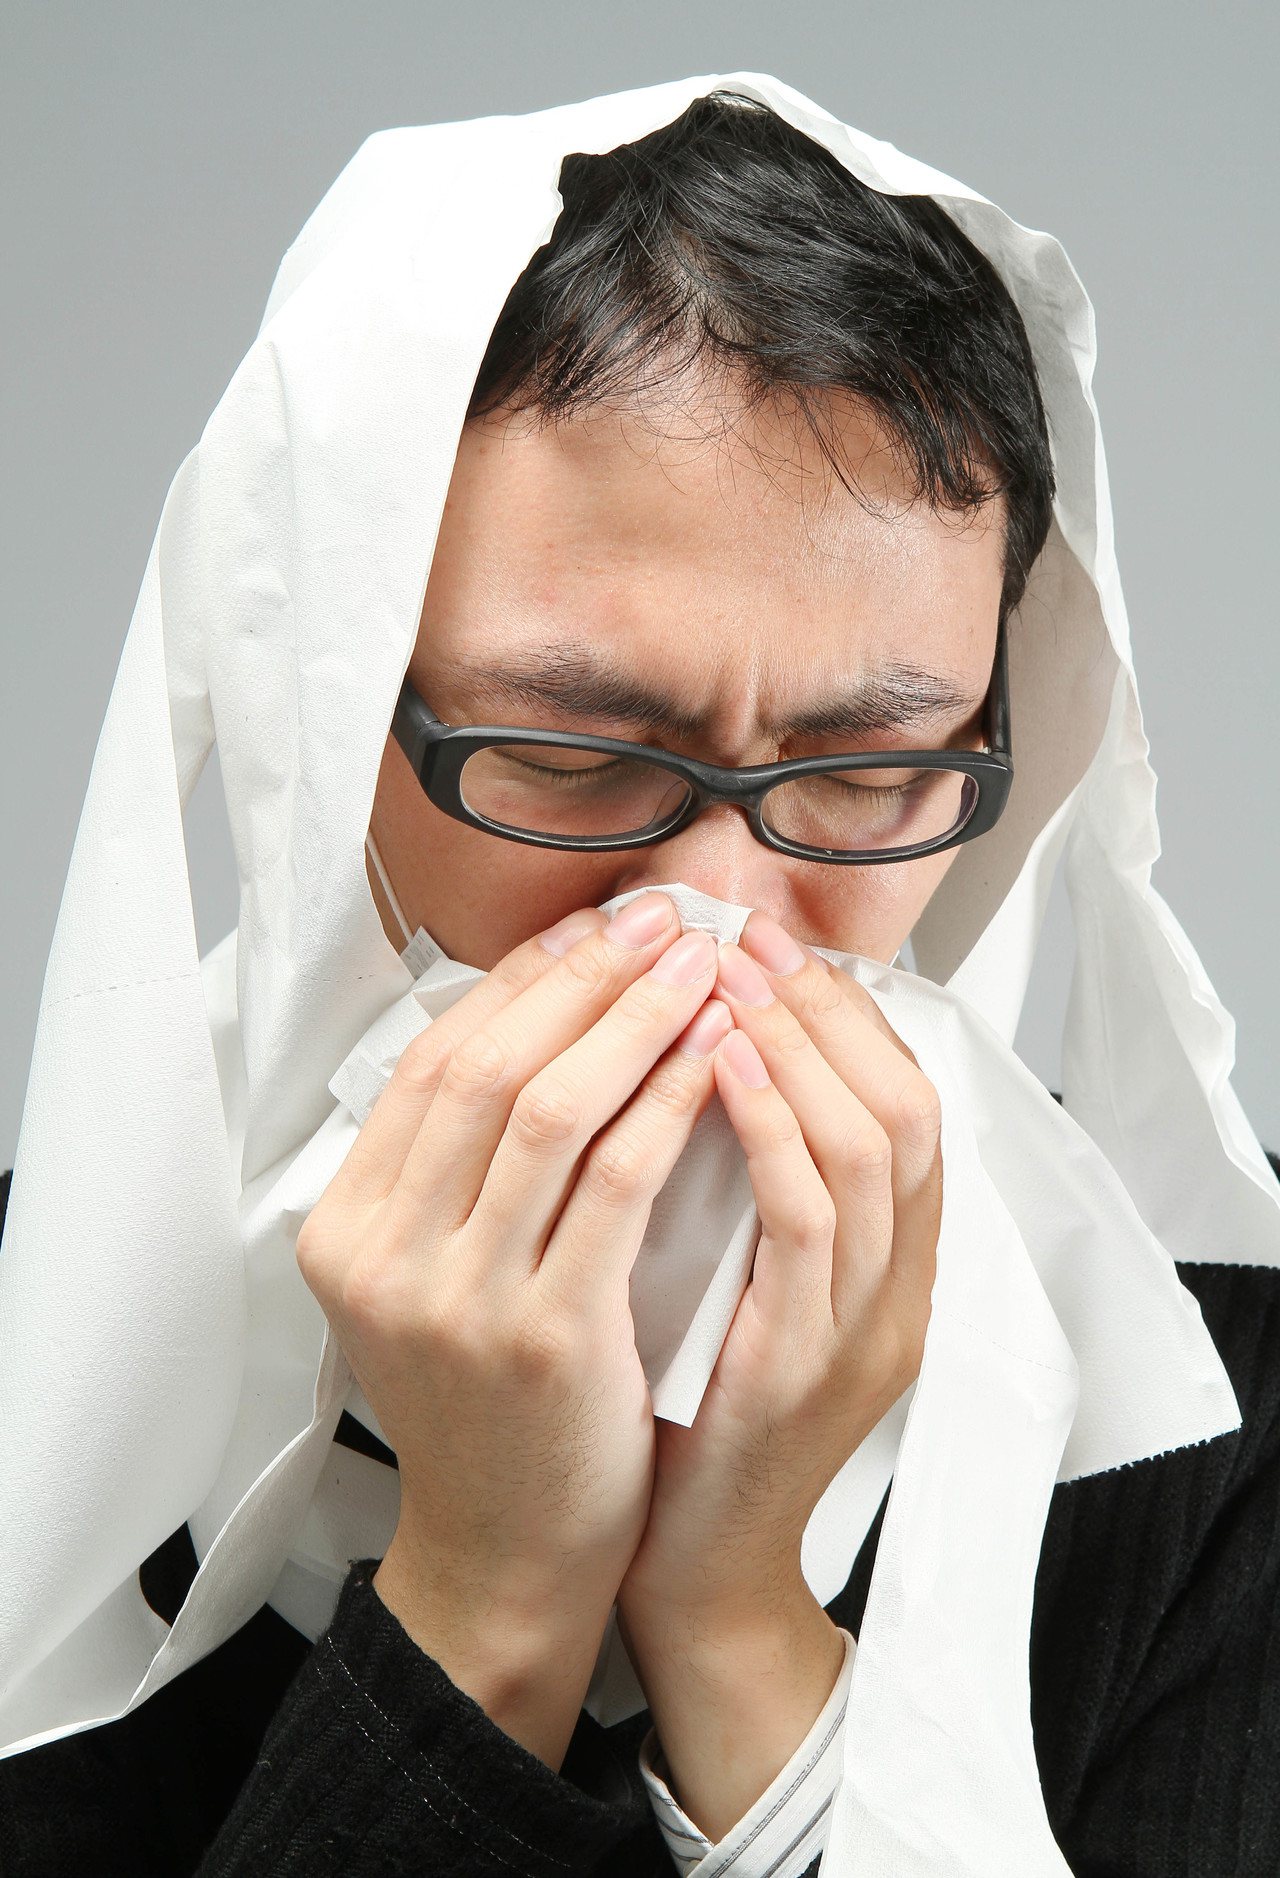 打噴嚏、咳嗽等要用衛生紙、手帕或衣袖掩住口鼻，相對溼度較高時，病毒會吸收空氣中的水氣變重，衛生紙能吸收水氣，不利病毒存活。

